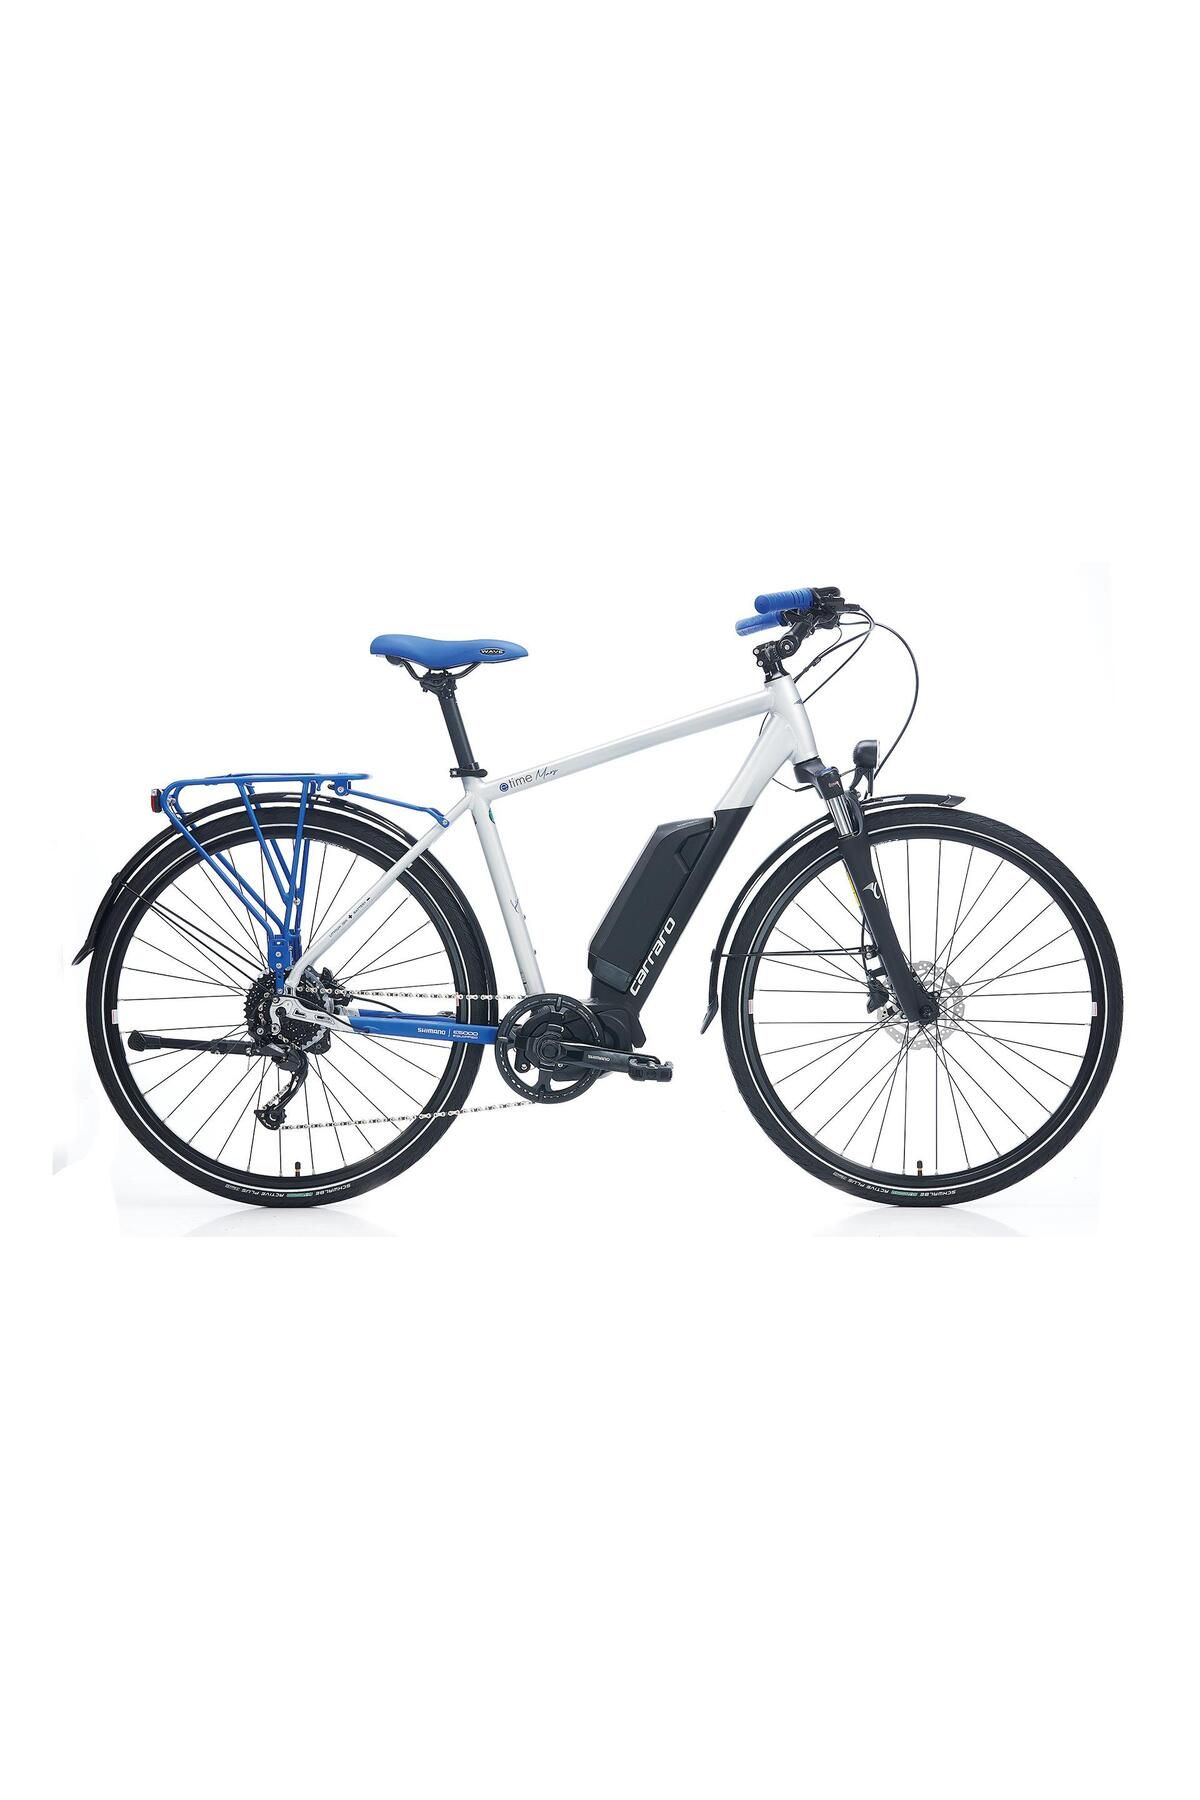 Carraro E-time Mars E-bike Şehir Bisikleti 28 Jant Mat Gümüş/mavi 46cm